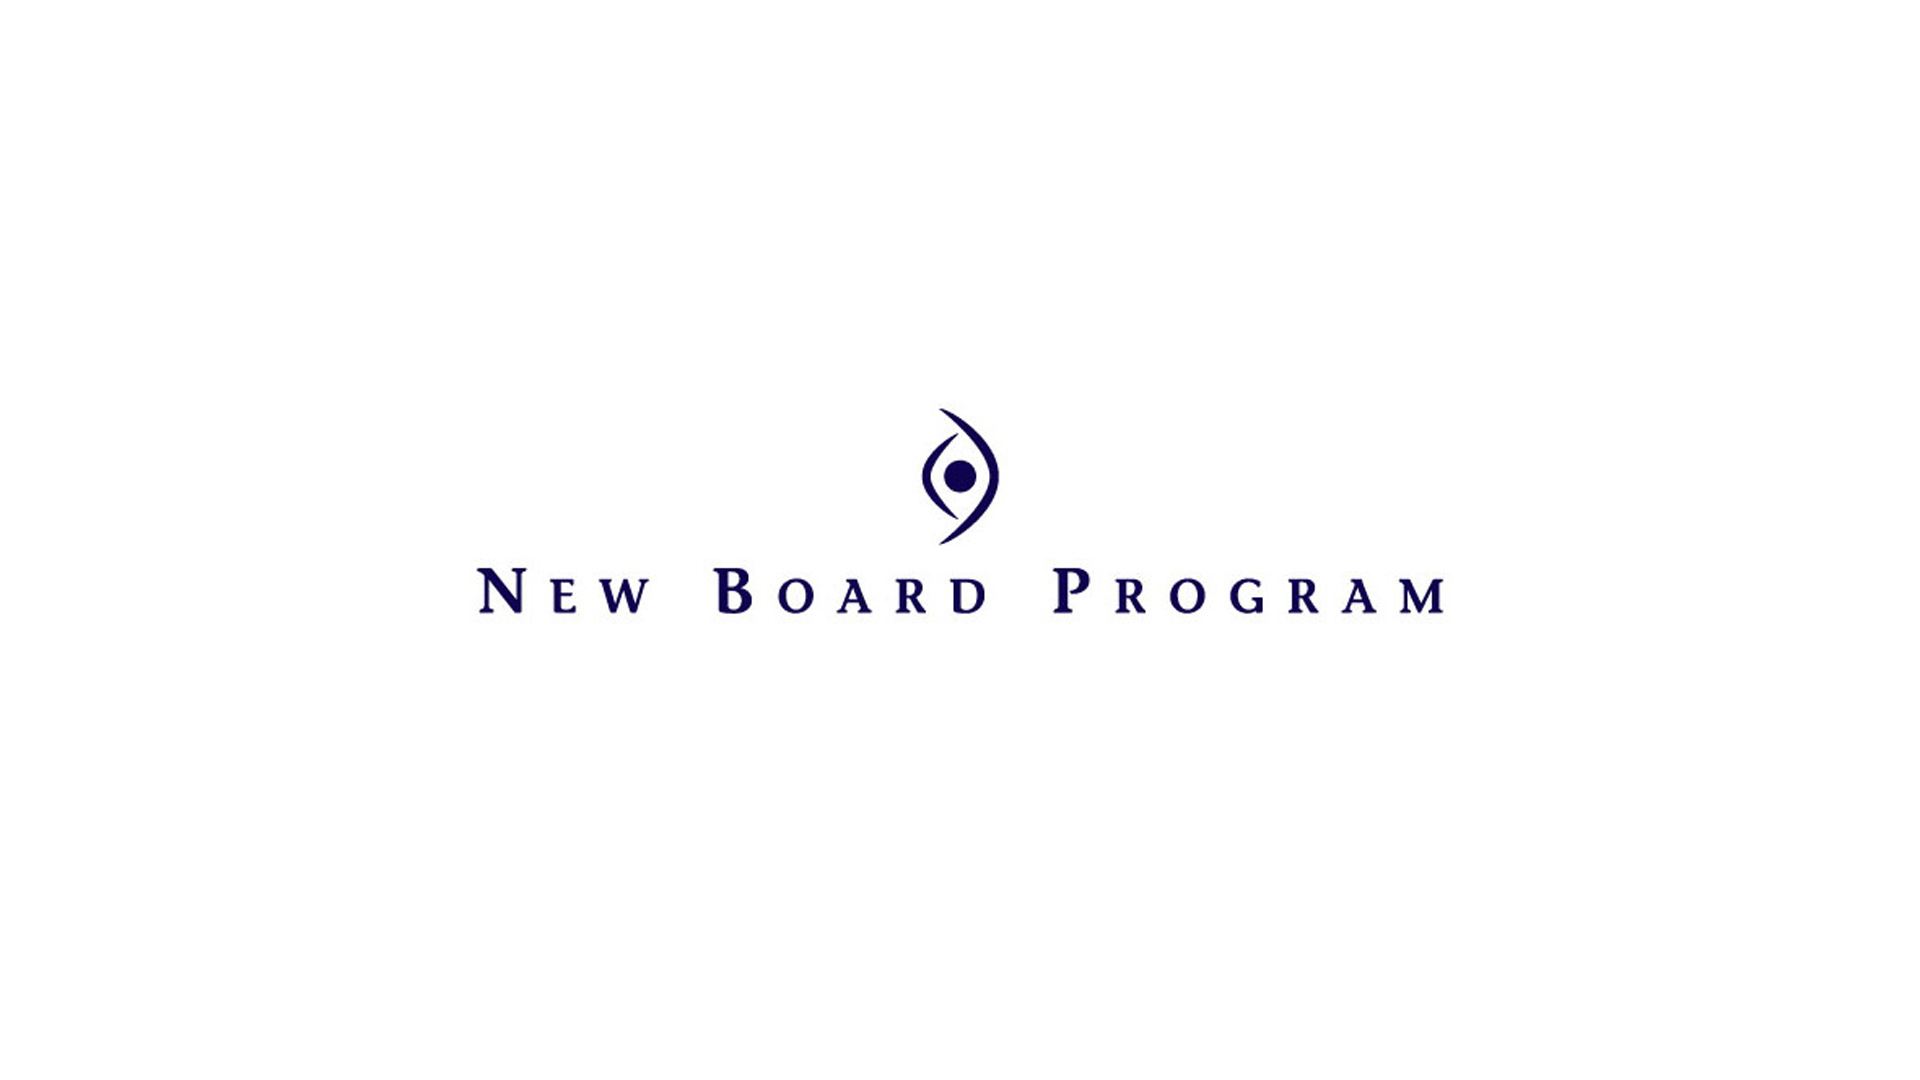 New Board Program